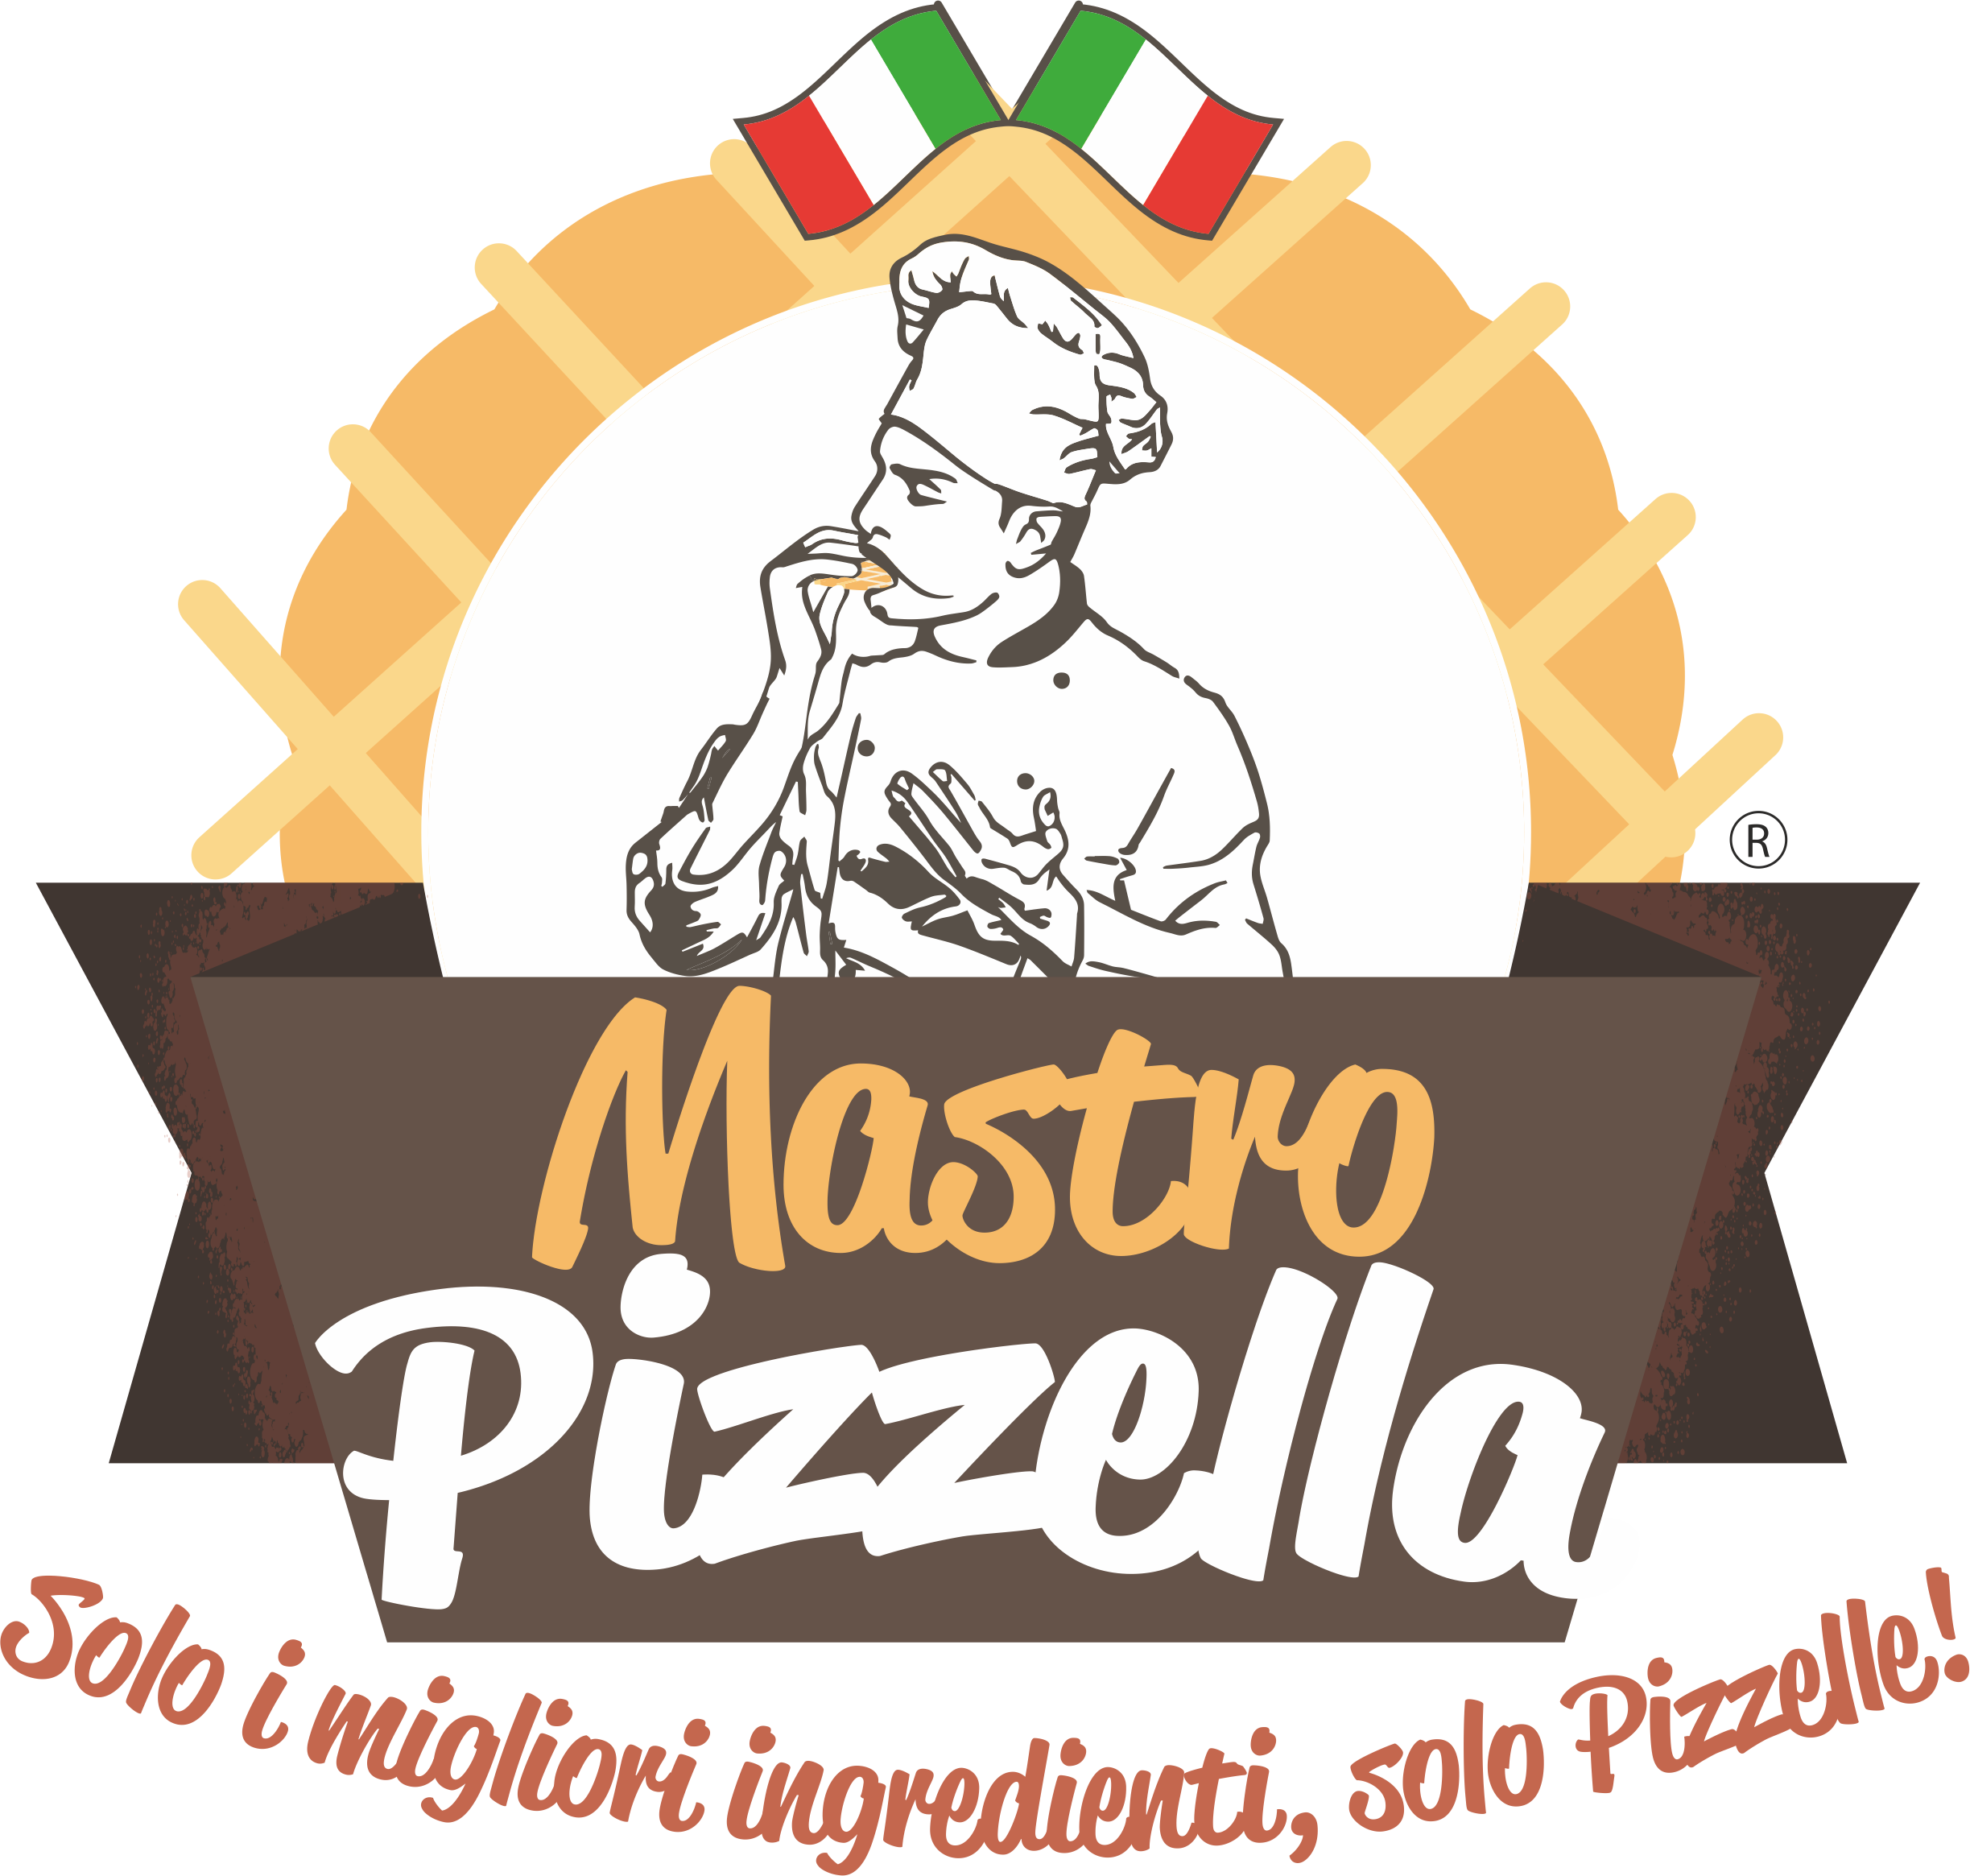 Mastro Pizzella – Solo i migliori ingredienti, solo Pizzelle!